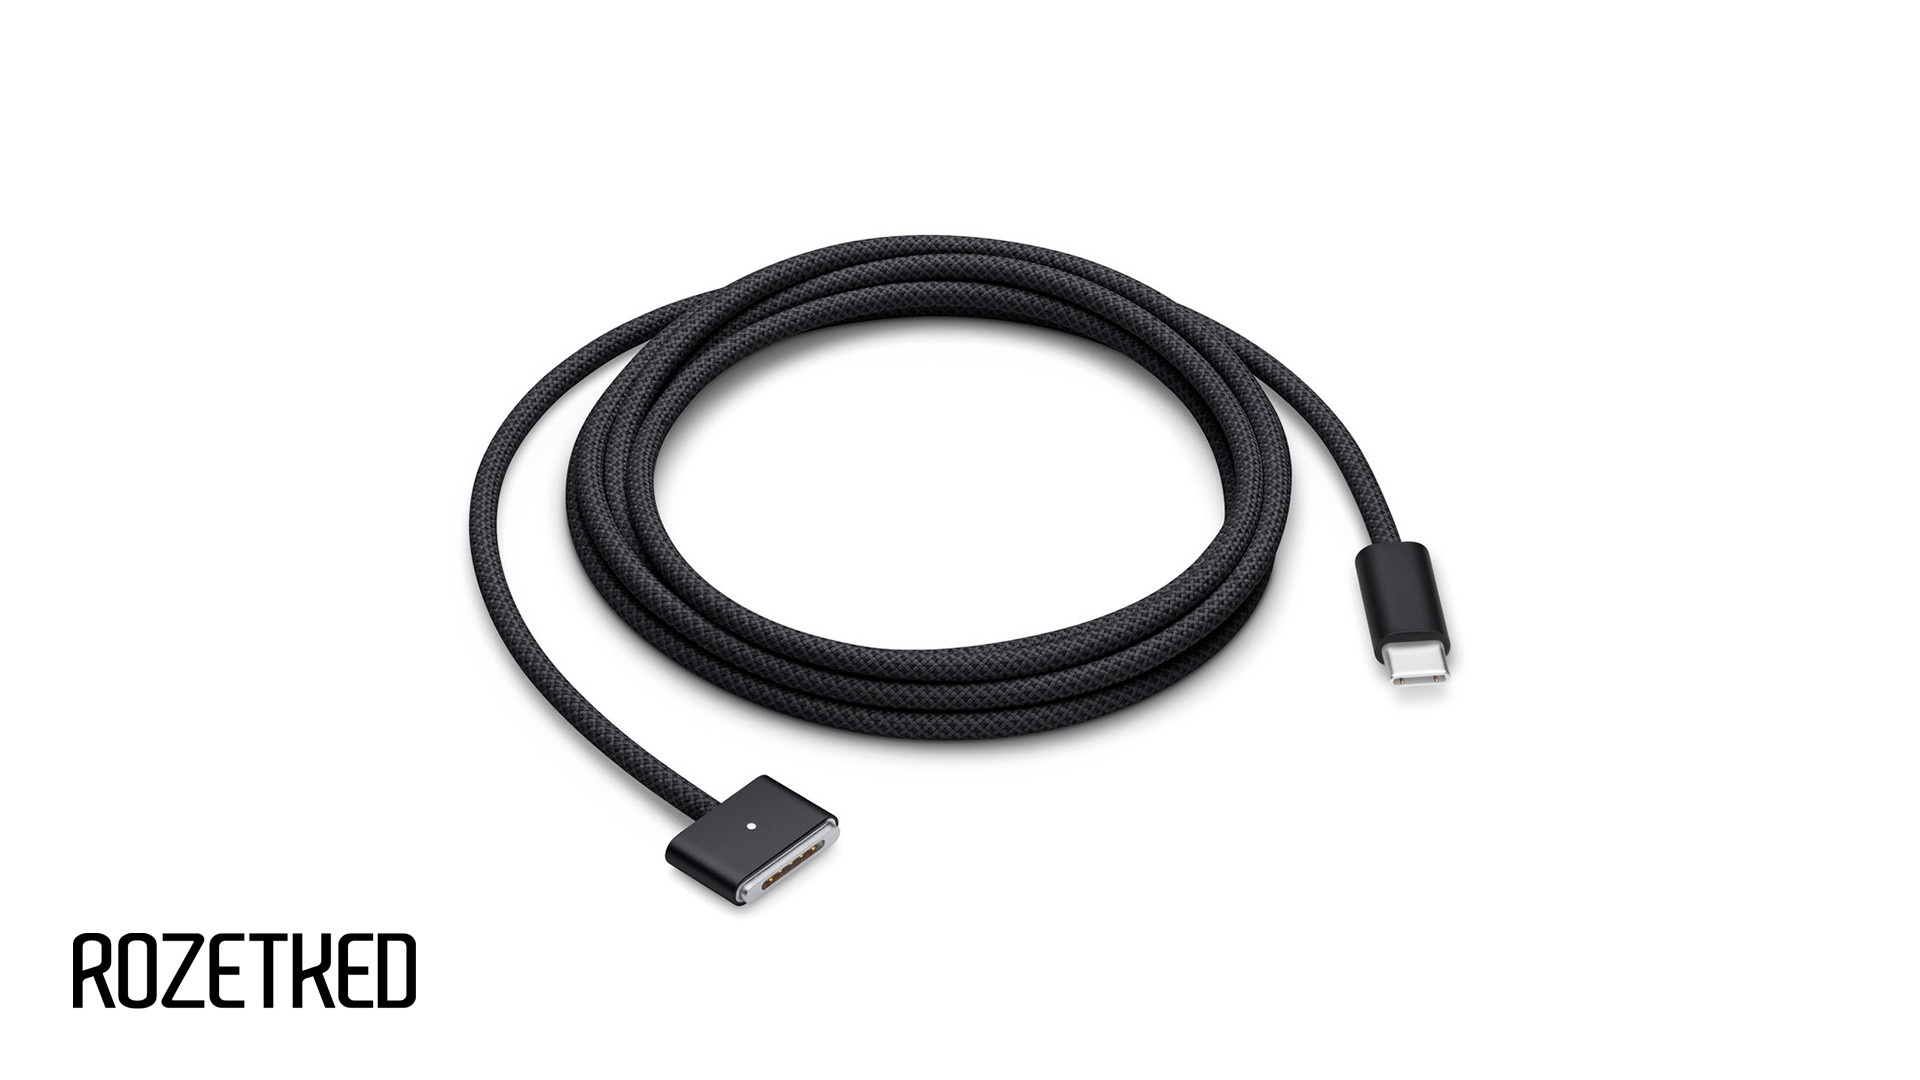 Кабель Apple USB-C c MagSafe 3 теперь доступен в цвете Space Black